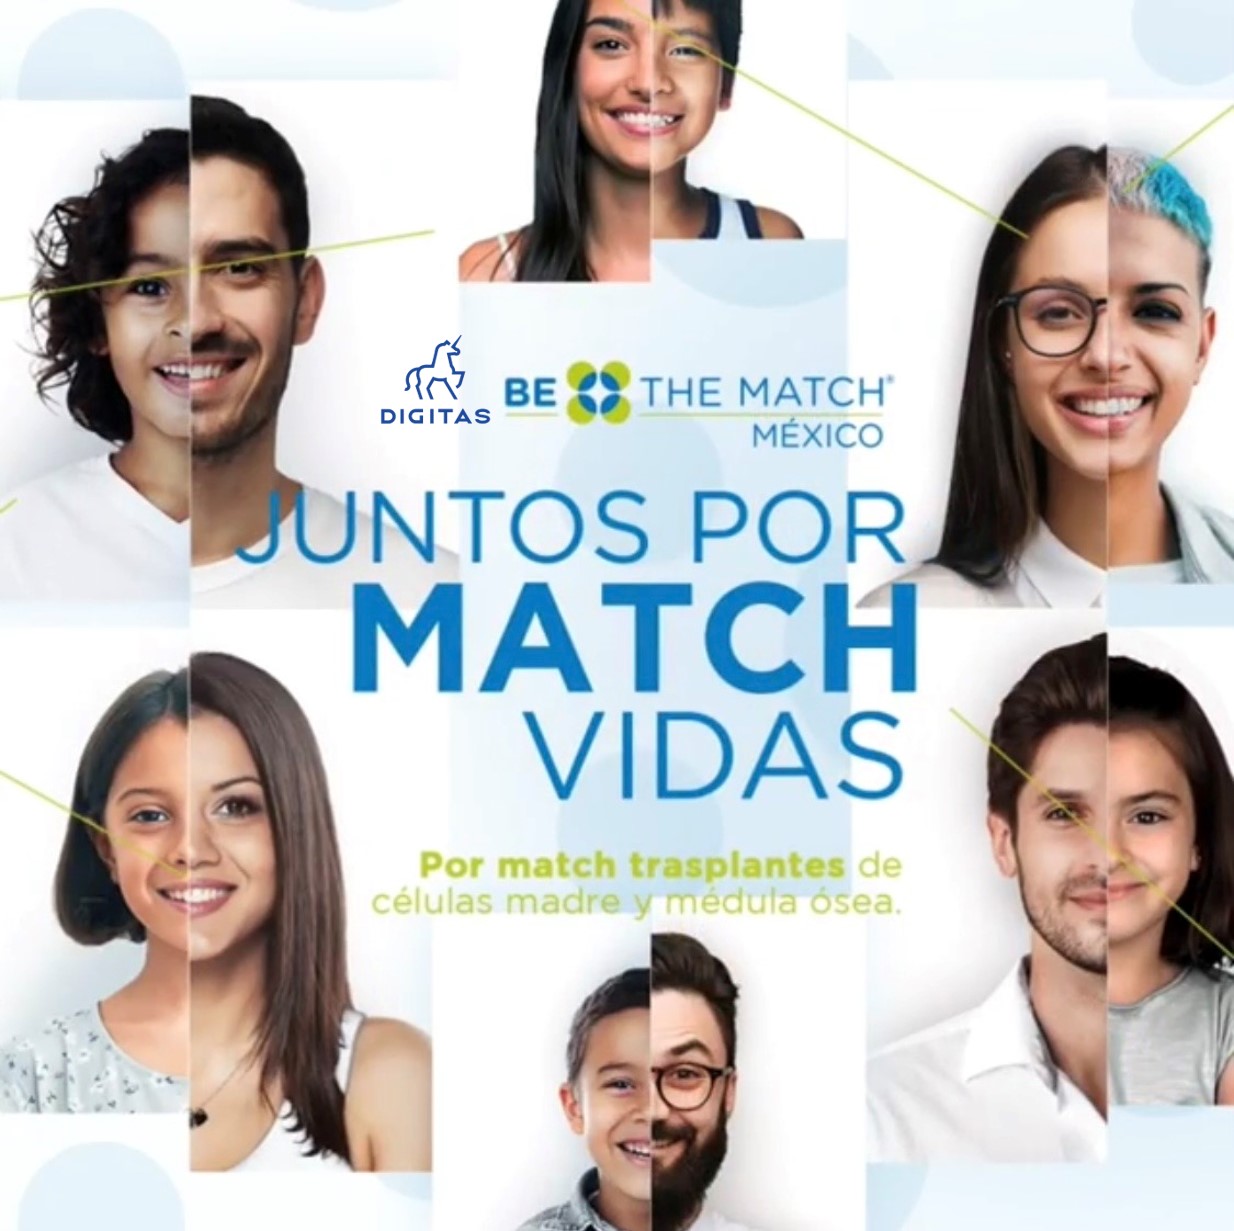 Digitas lanza su campaña “Juntos por Match vidas”